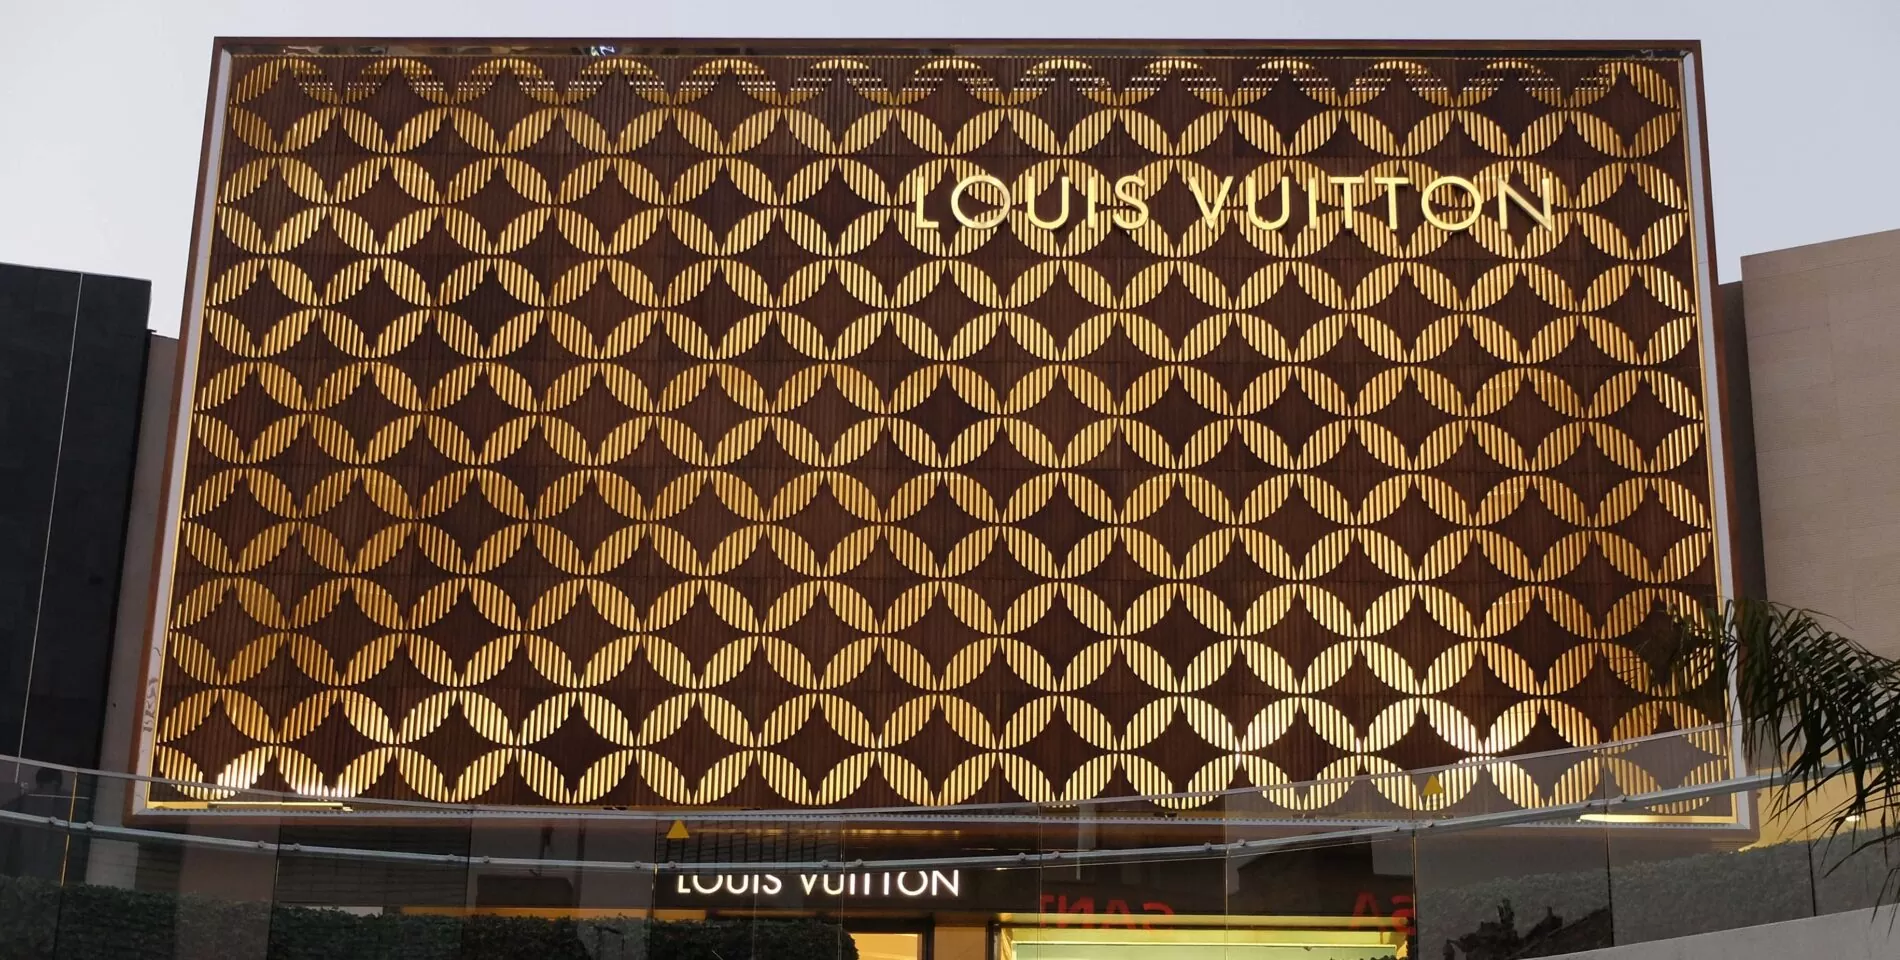 Louis Vuitton Santiago store, Chile